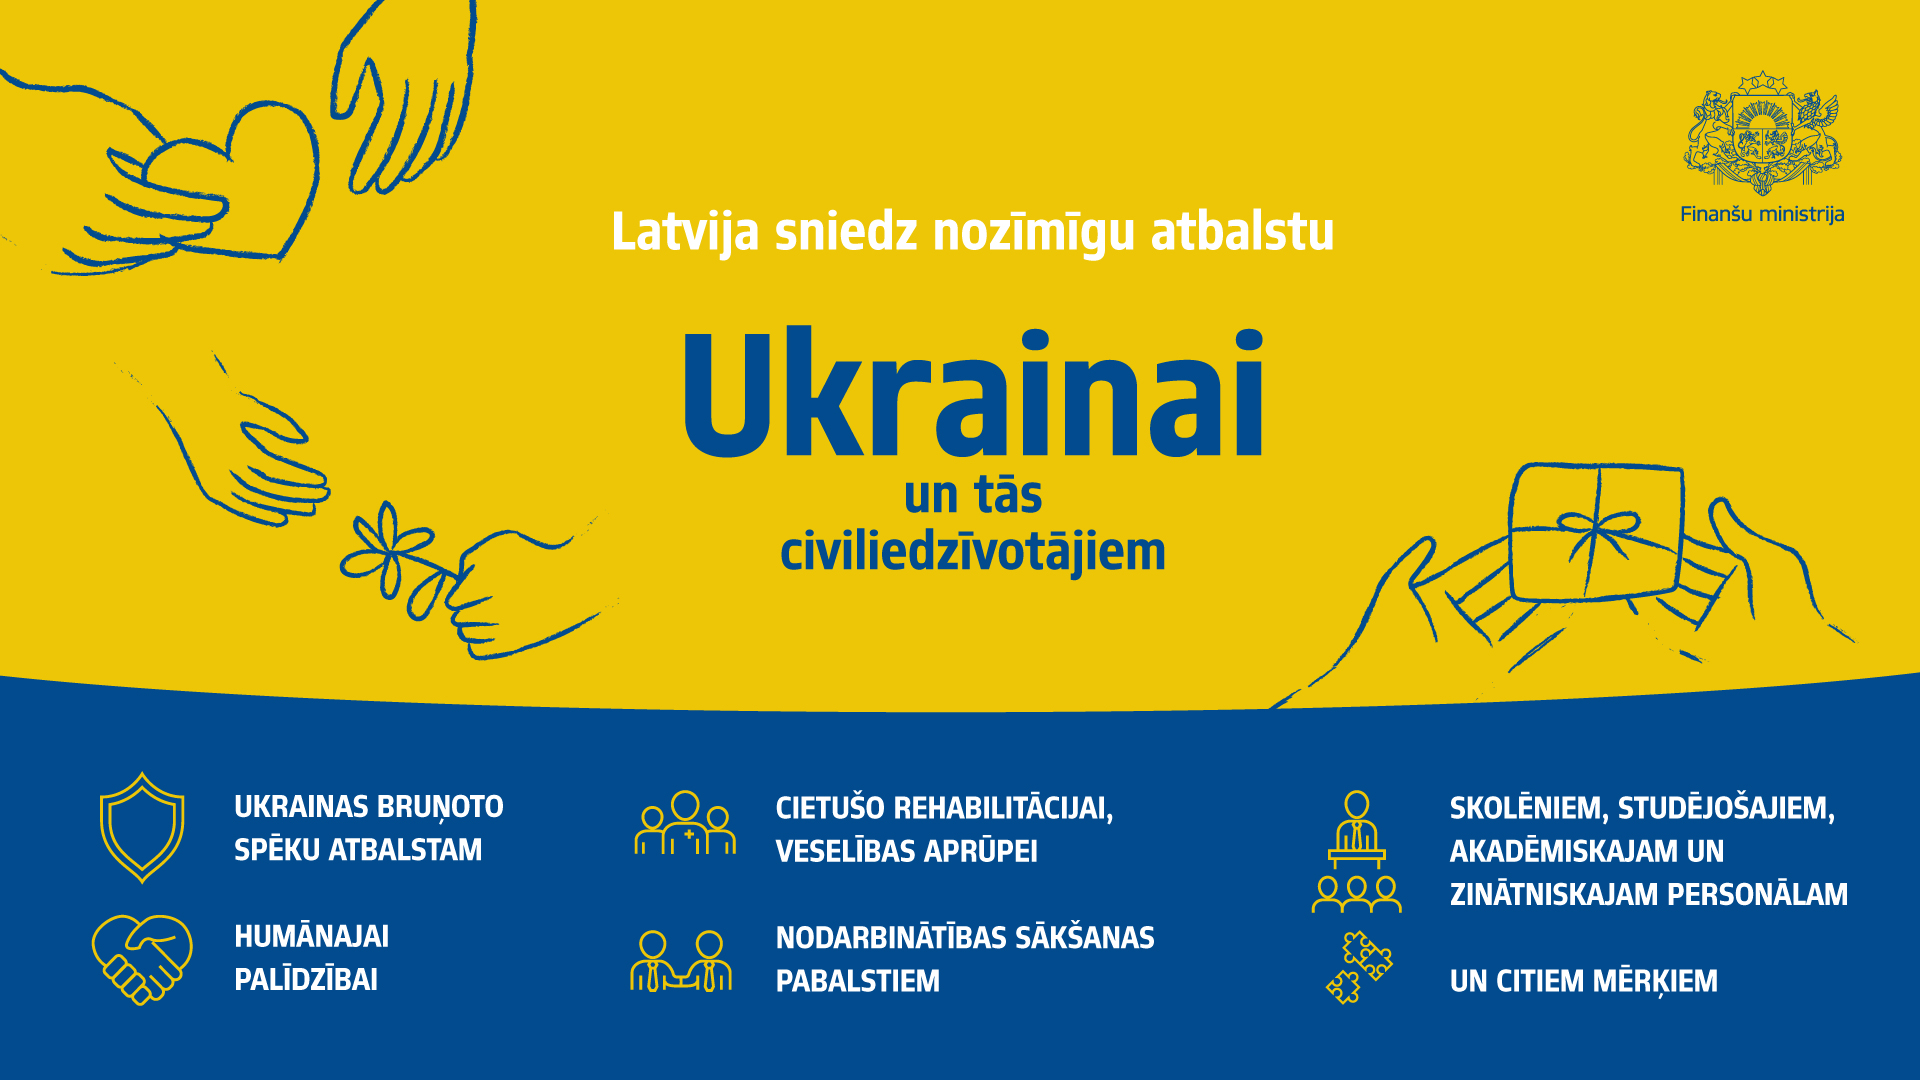 Latvija sniedz nozīmīgu atbalstu Ukrainai un tās civiliedzīvotājiem